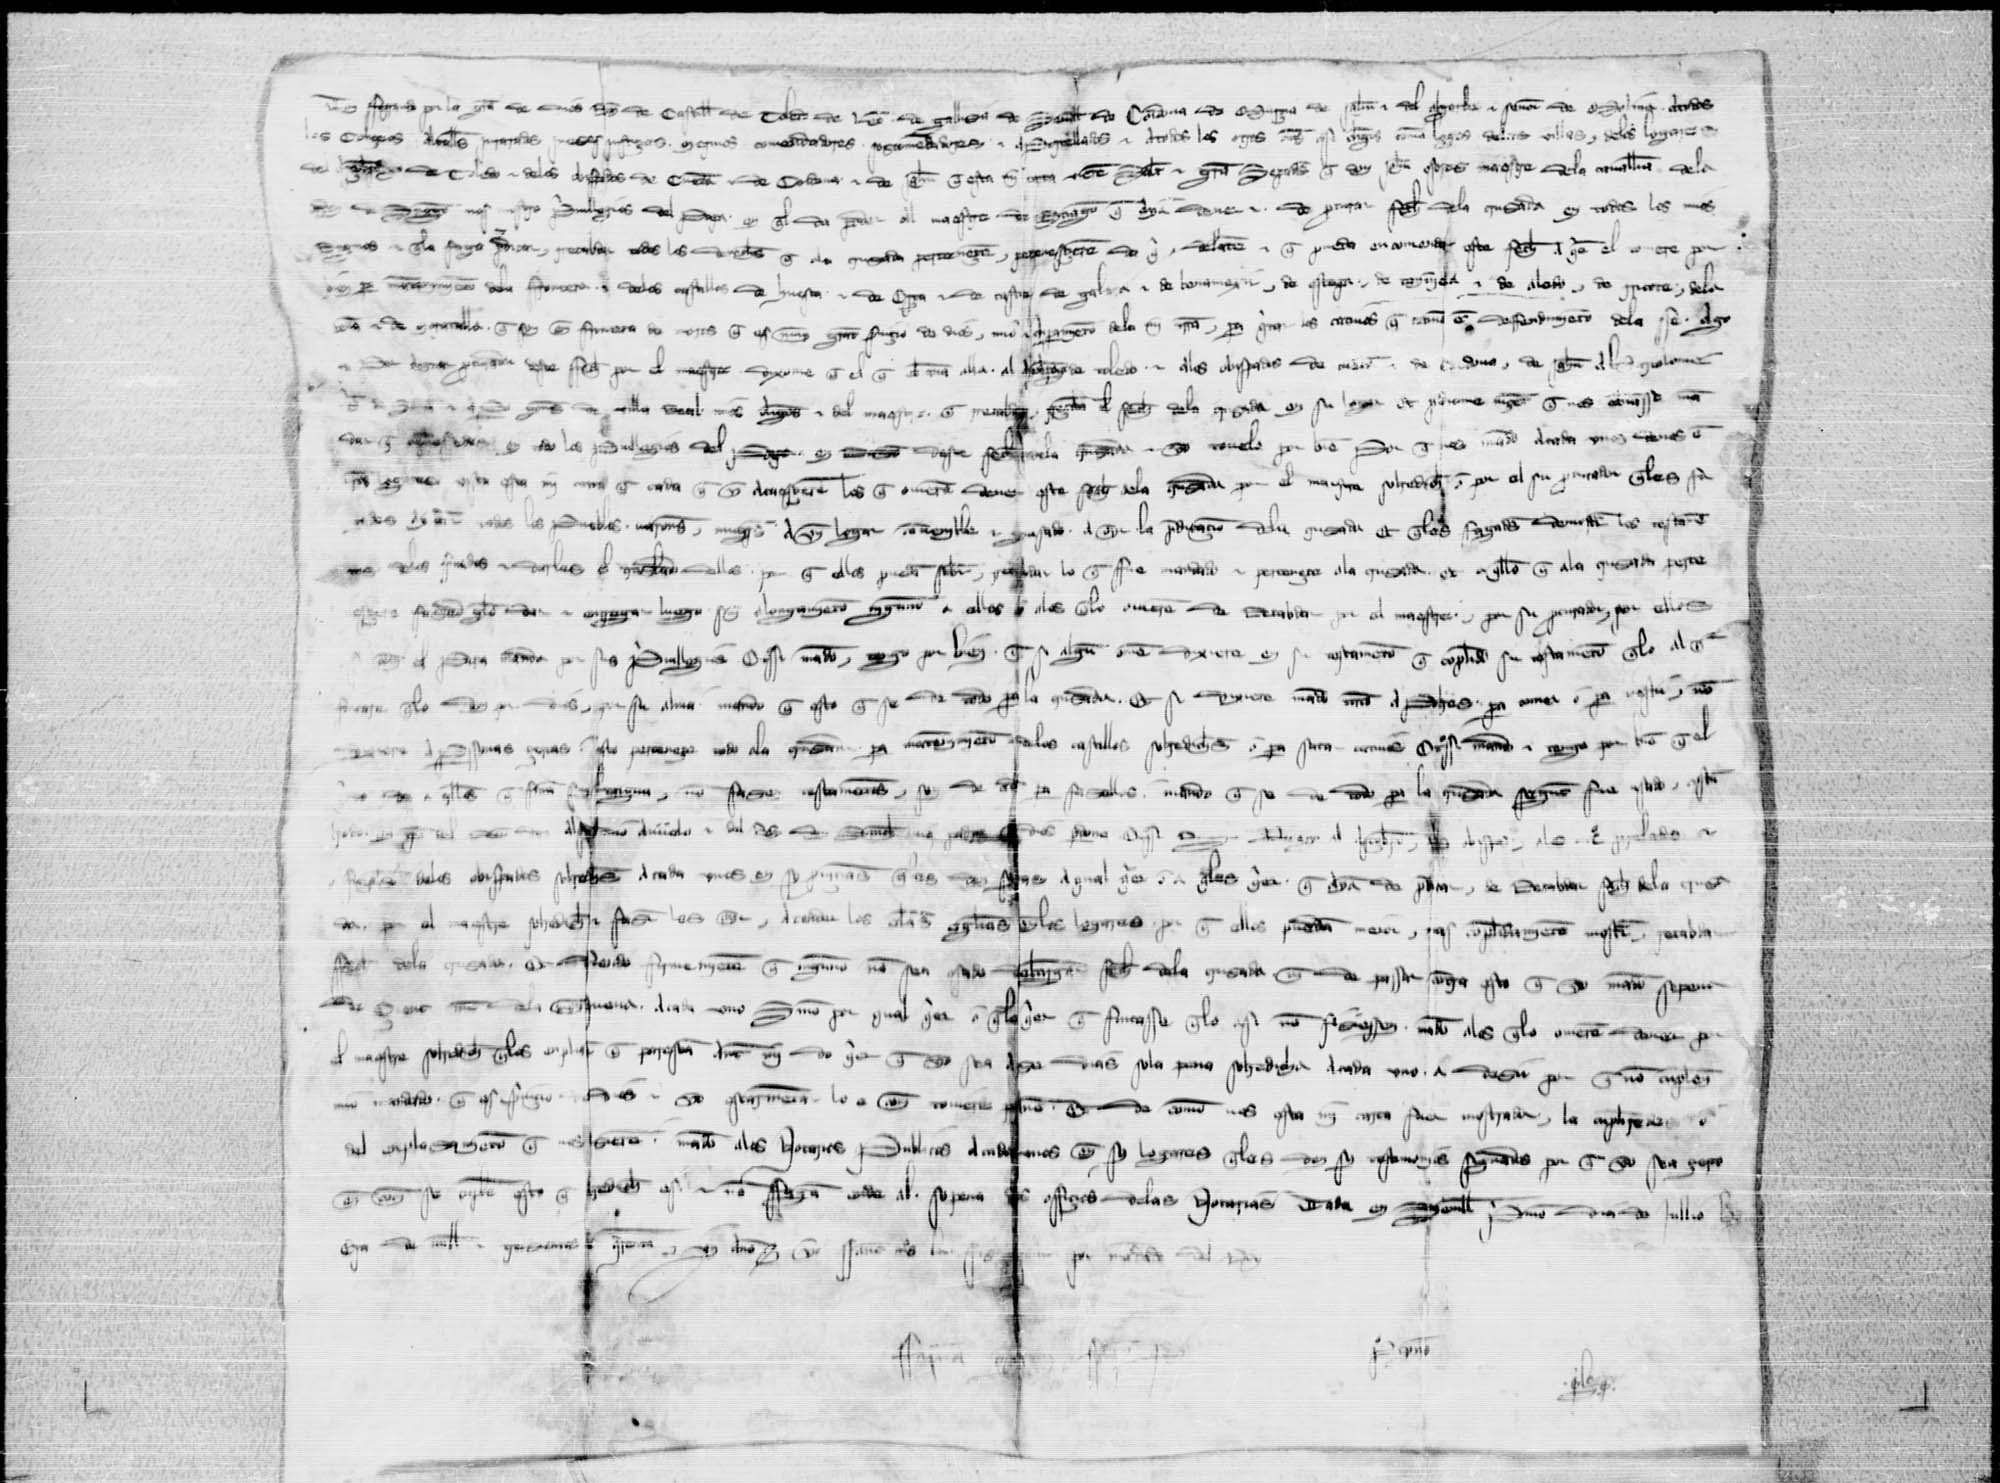 Carta de confirmación de privilegios dada por Fernando IV a Juan Osórez, maestre de Santiago, sobre los derechos del pecho de cruzada otorgados por concesión papal por la defensa en tierras de frontera de los castillos de Aledo, Ricote, Moratalla y Huéscar, entre otros.